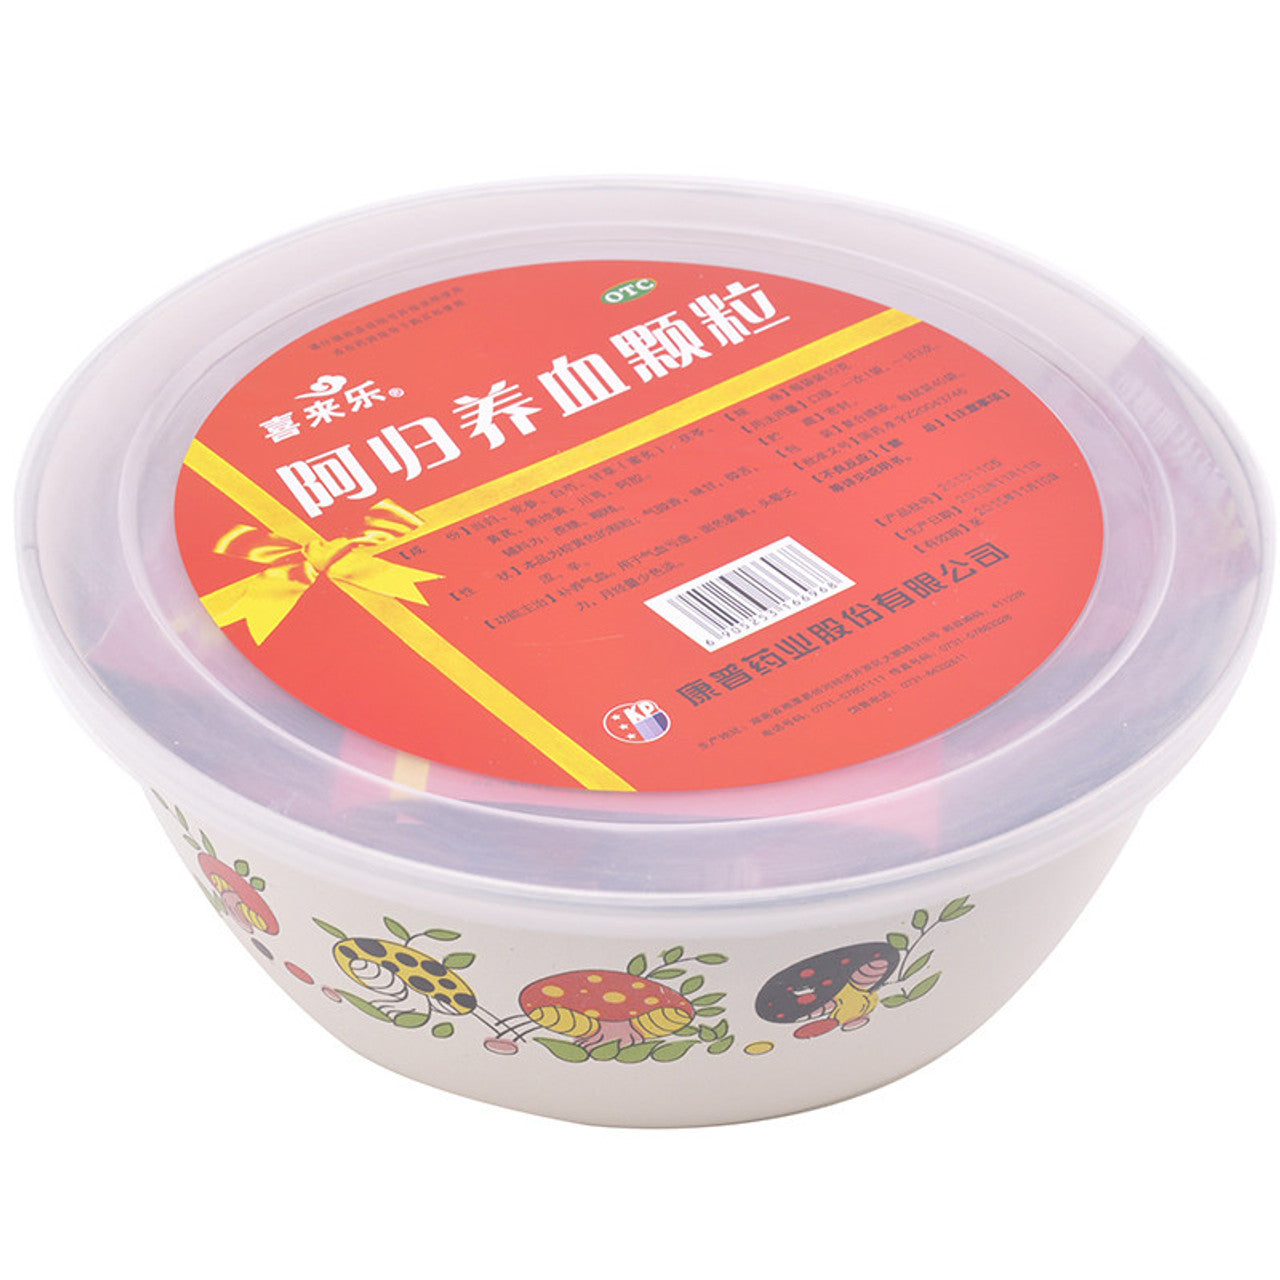 China Herb. Brand Xilaile. Egui Yangxue Keli or Egui Yangxue Granules or E Gui Yang Xue Ke Li or E Gui Yang Xue Granules or EGuiYangXueKeLi for Tonify Blood